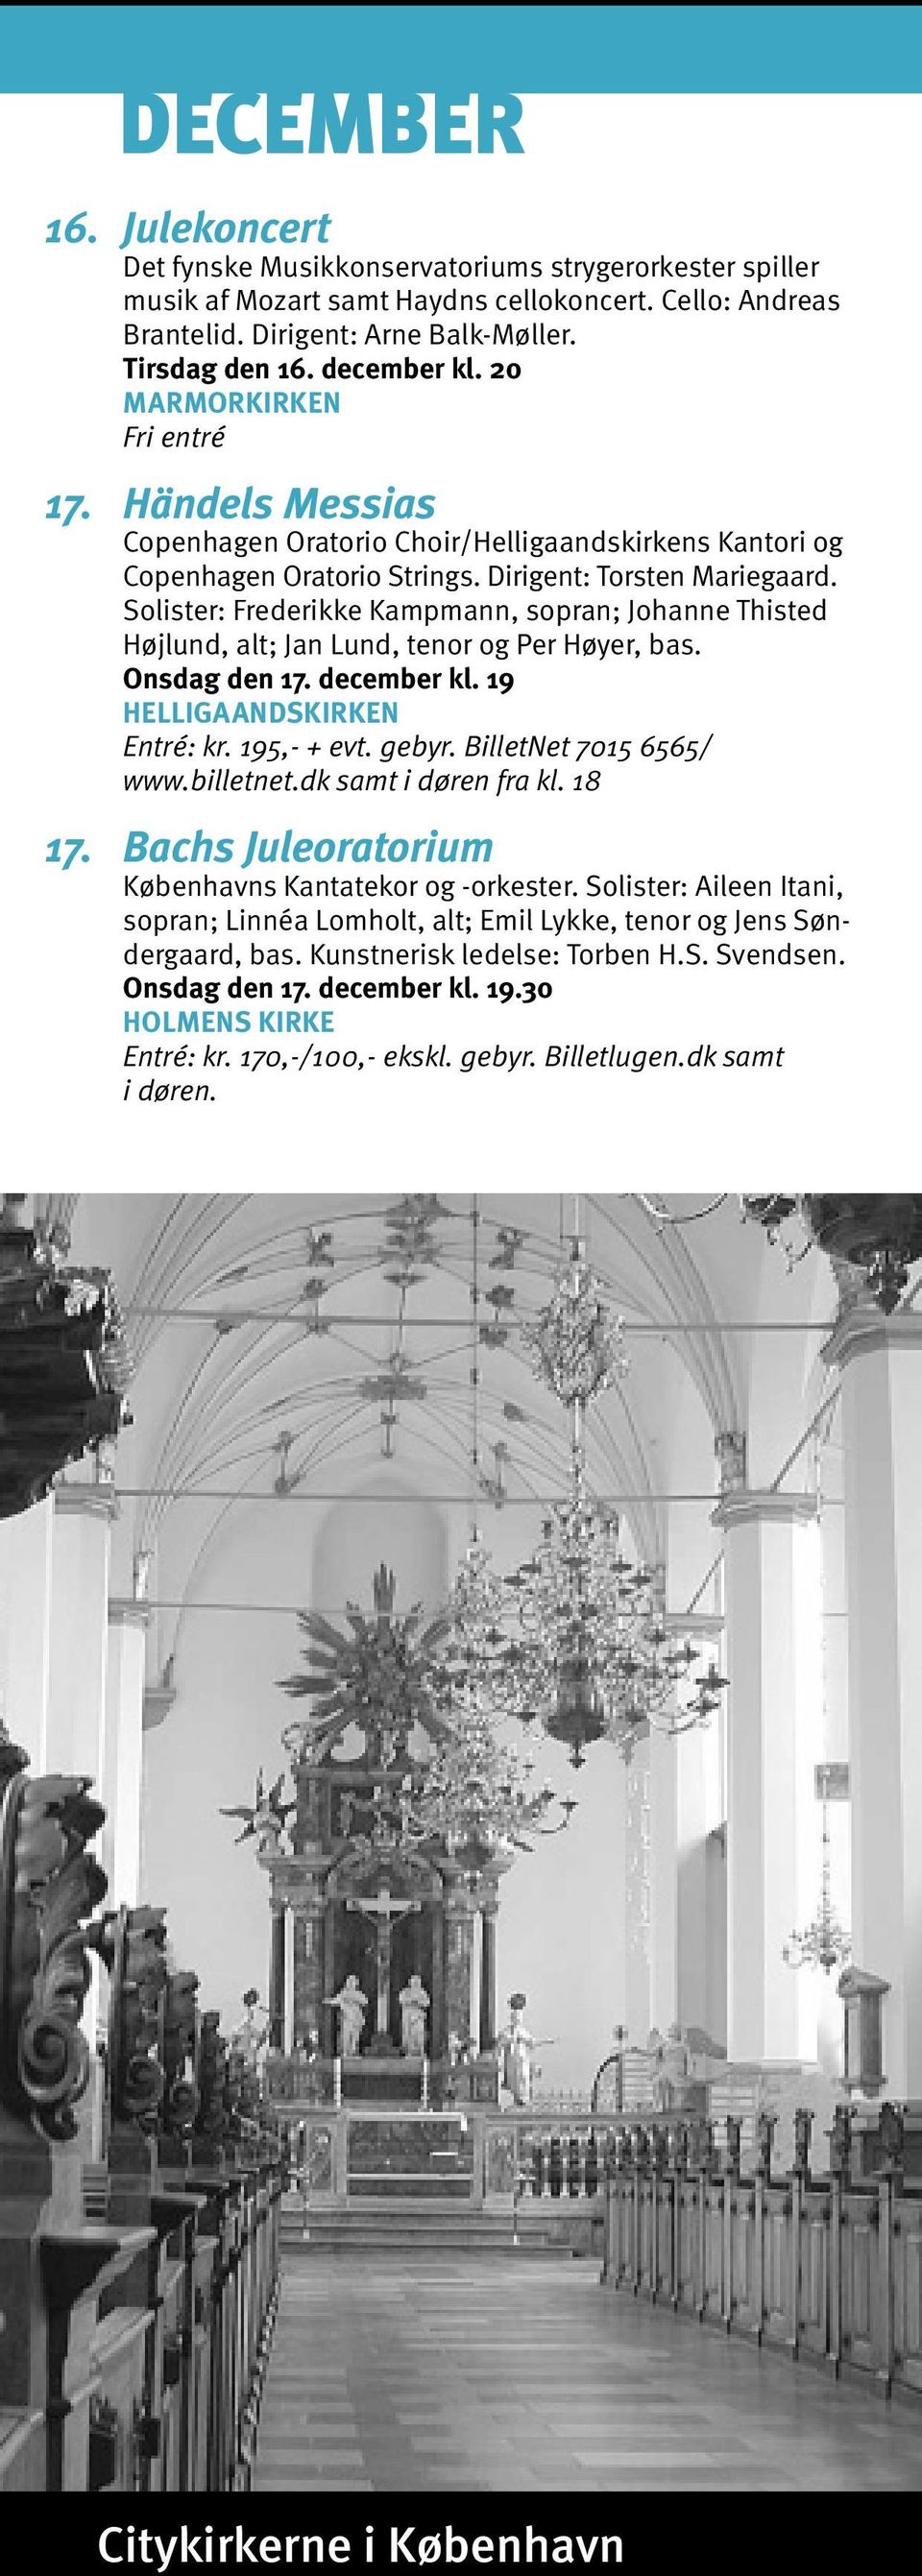 Solister: Frederikke Kampmann, sopran; Johanne Thisted Højlund, alt; Jan Lund, tenor og Per Høyer, bas. Onsdag den 17. december kl. 19 Entré: kr. 195,- + evt. gebyr. BilletNet 7015 6565/ www.